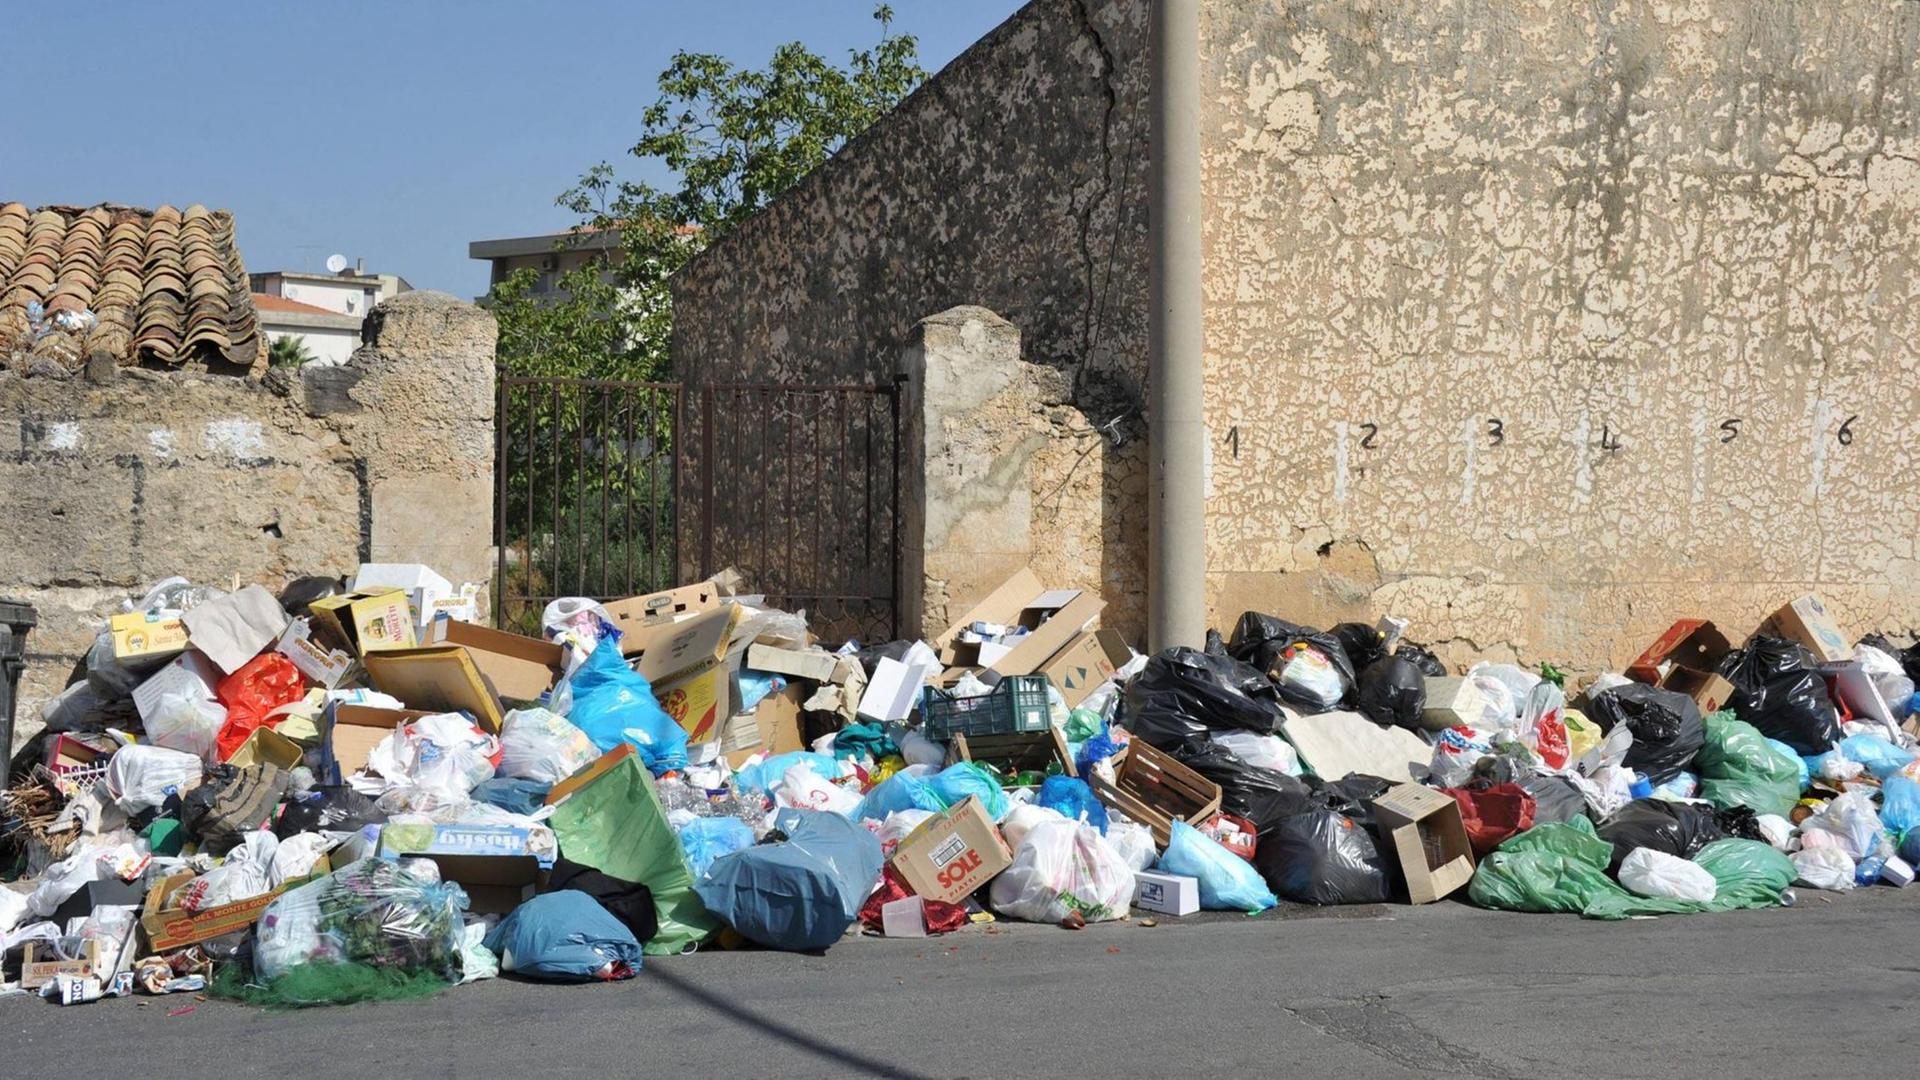 Müll aus dem Auto werfen – Strafen und Folgen für die Umwelt